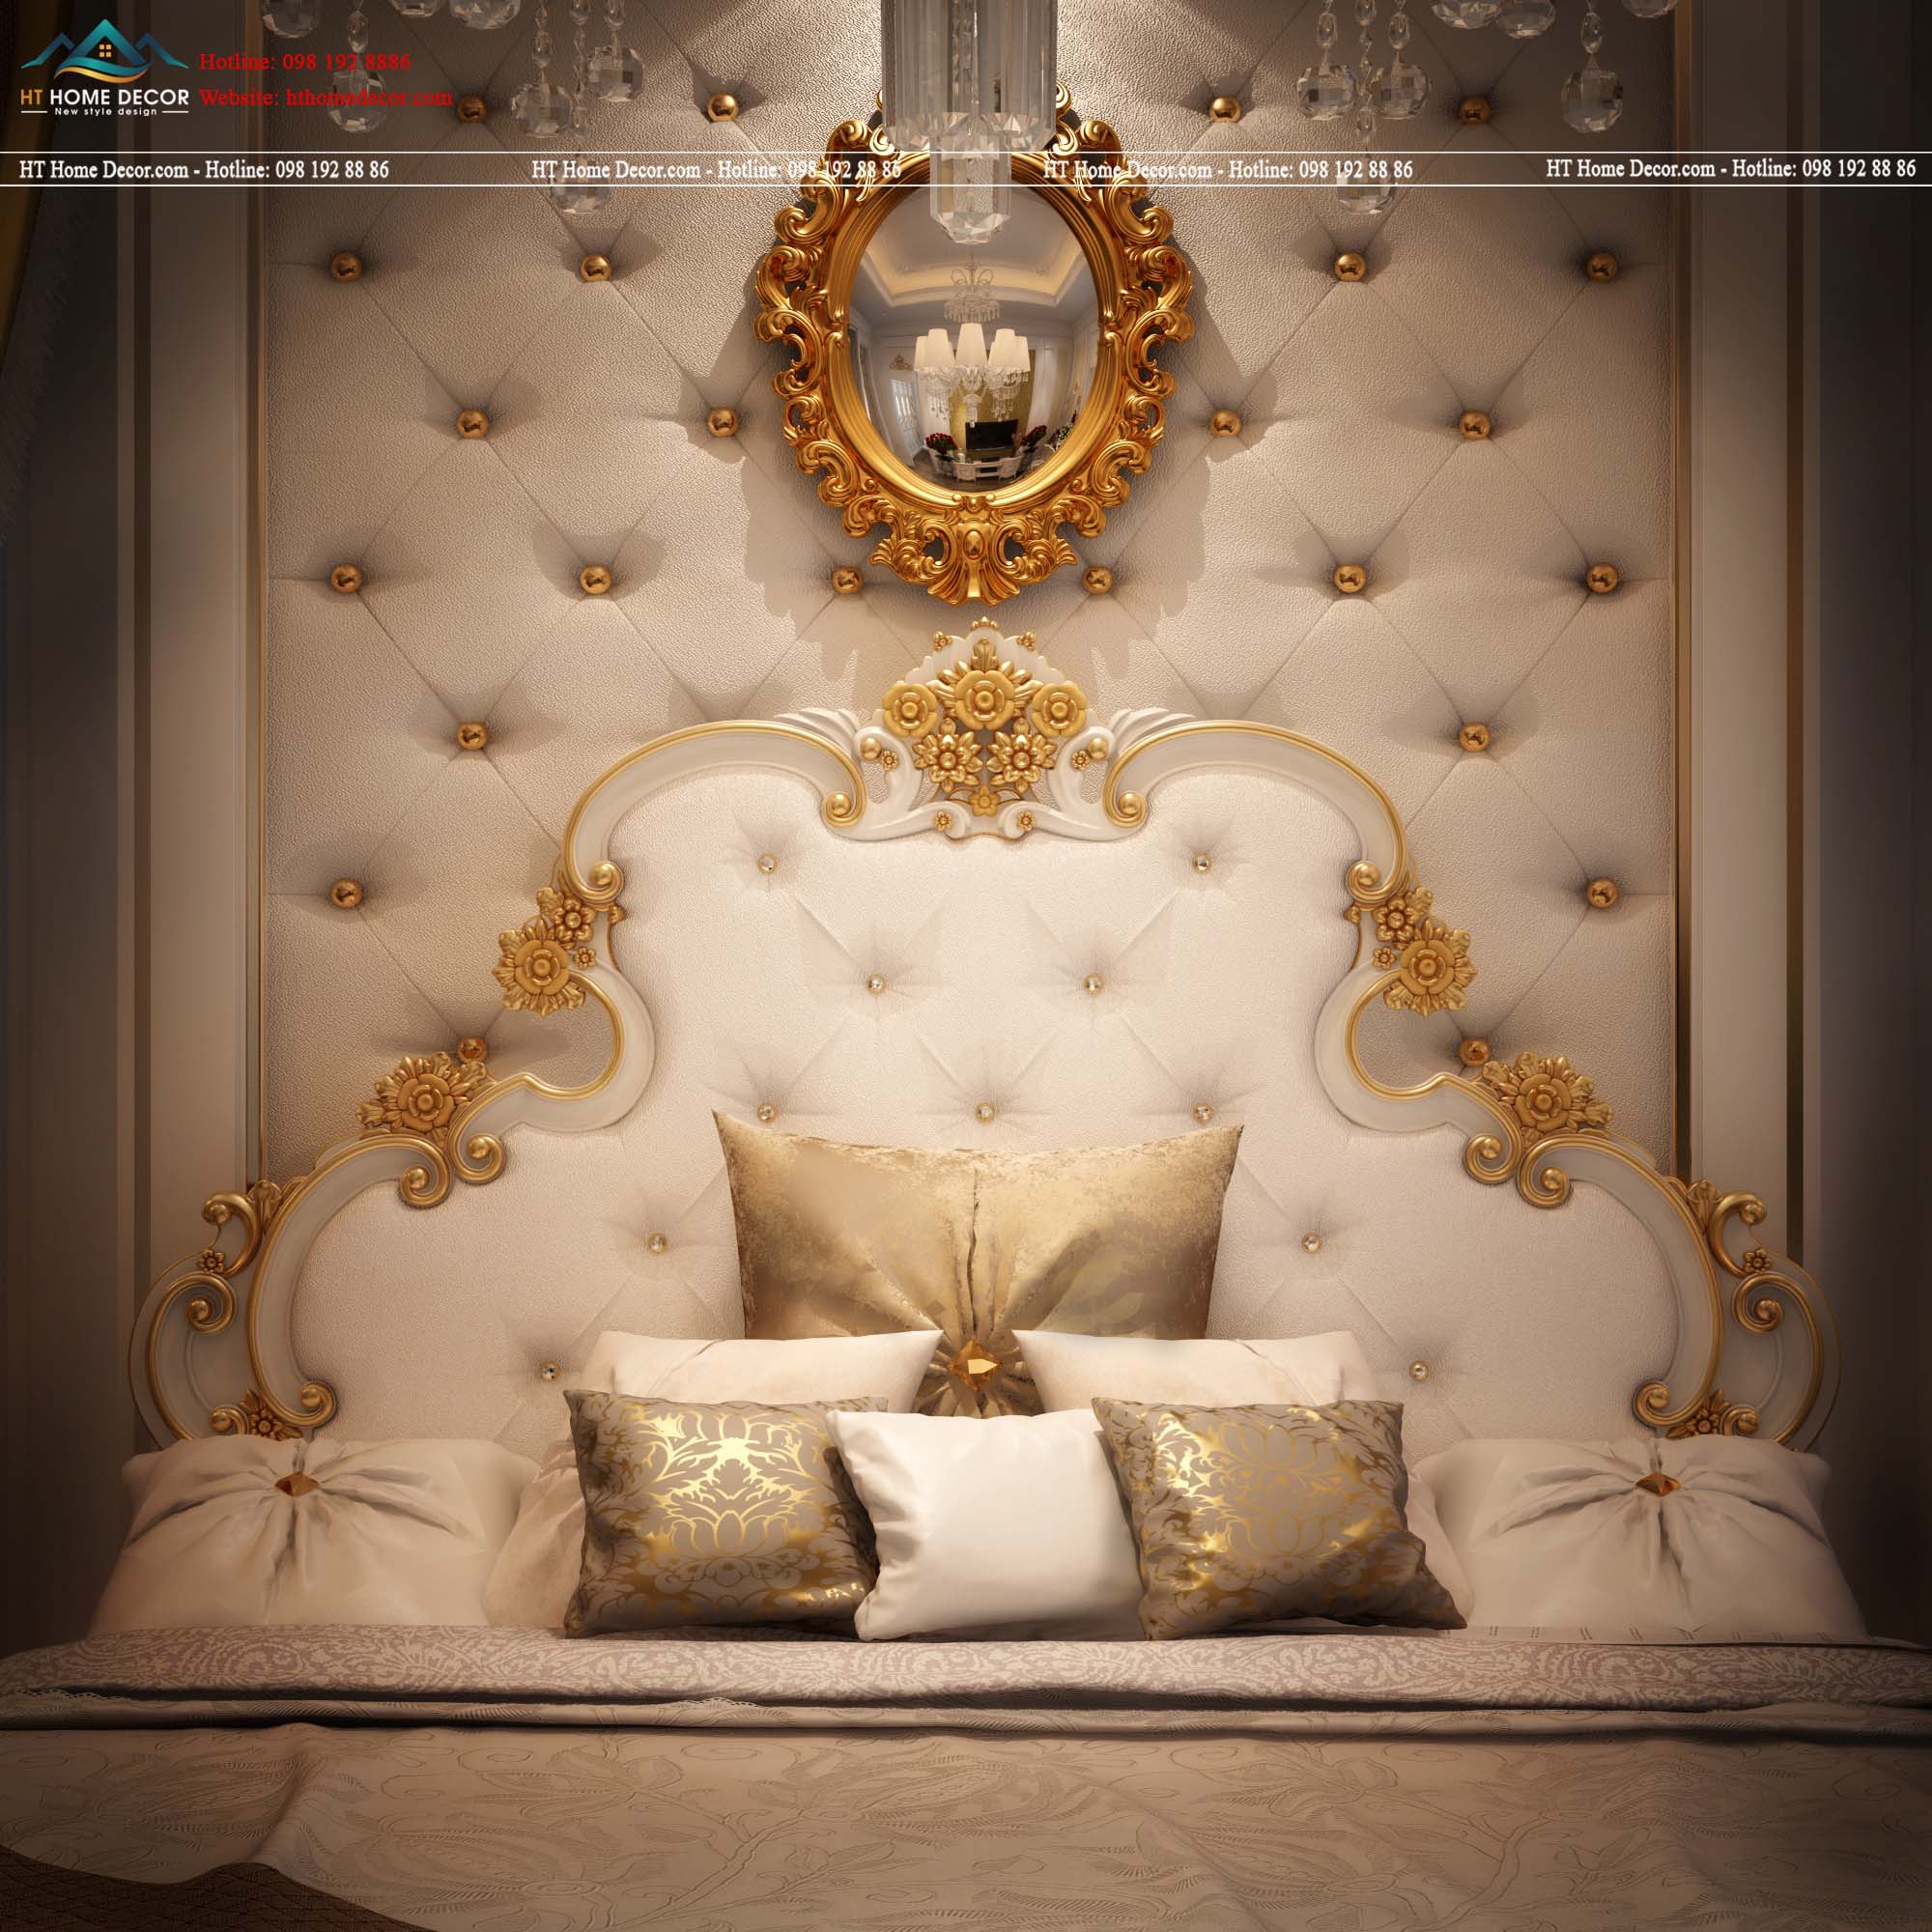 Không hổ danh là biệt thự hoàng gia, với thiết kế giường ngủ lộng lẫy, từng đường viền được sử dụng màu vàng nhũ bao trùm cả chiếc giường trắng mềm mại.